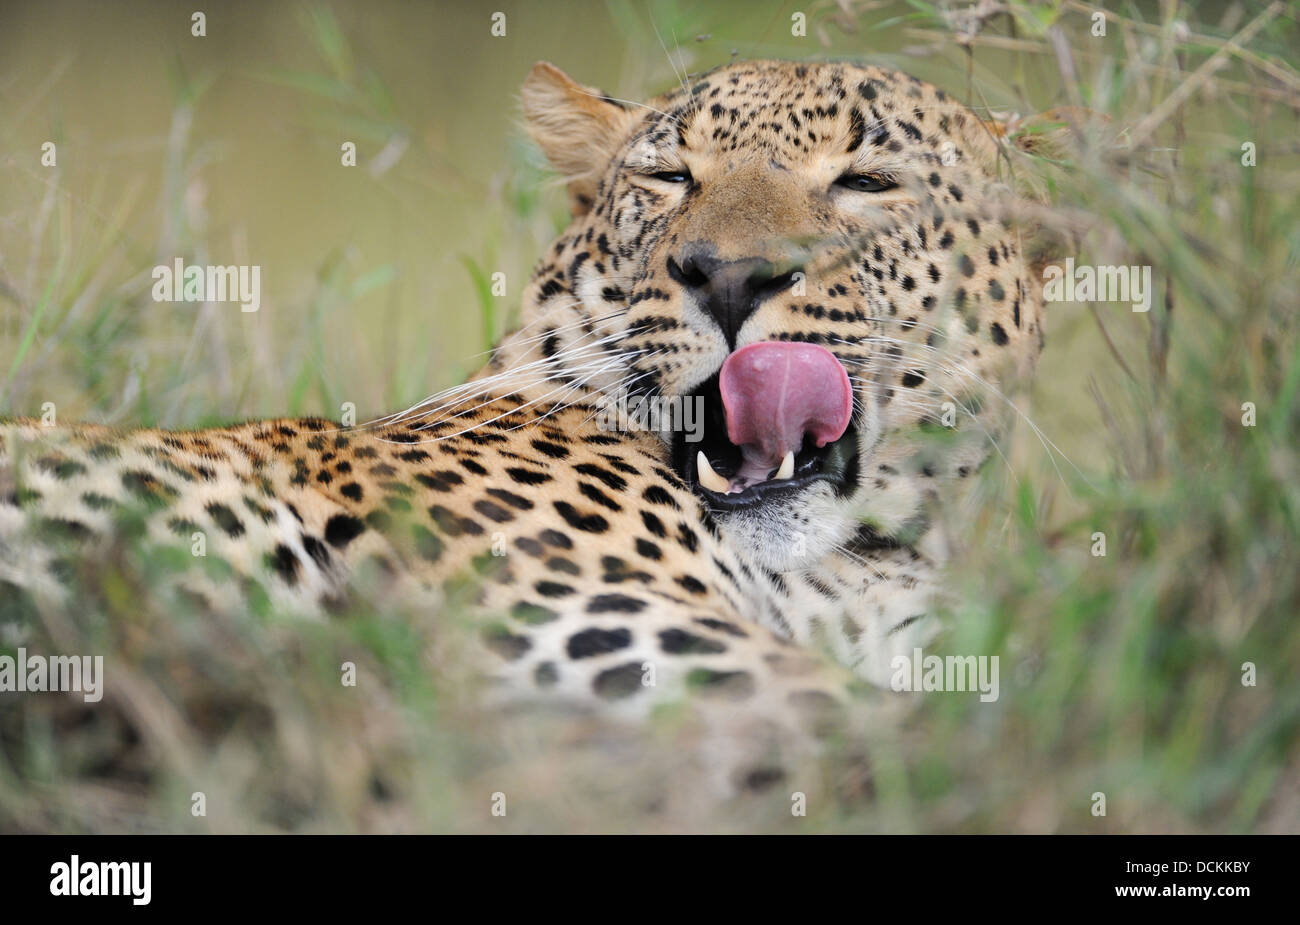 male leopard yawling, daylight portrait Stock Photo